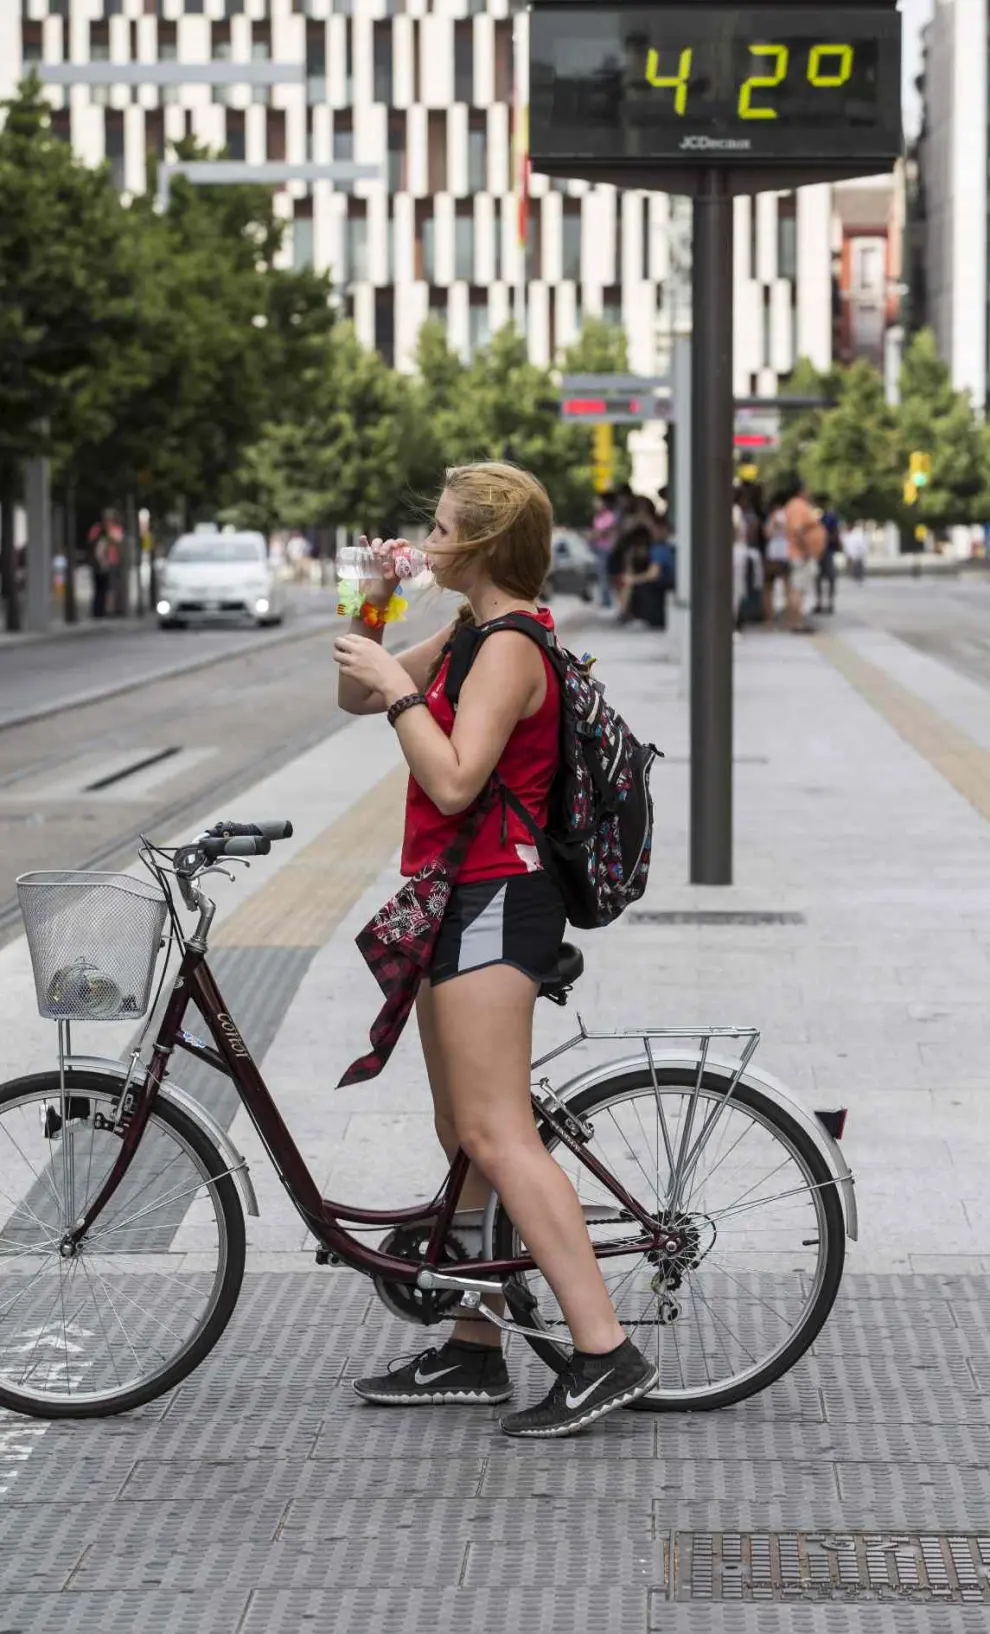 Una persona en bici en Zaragoza el día de récord histórico de calor